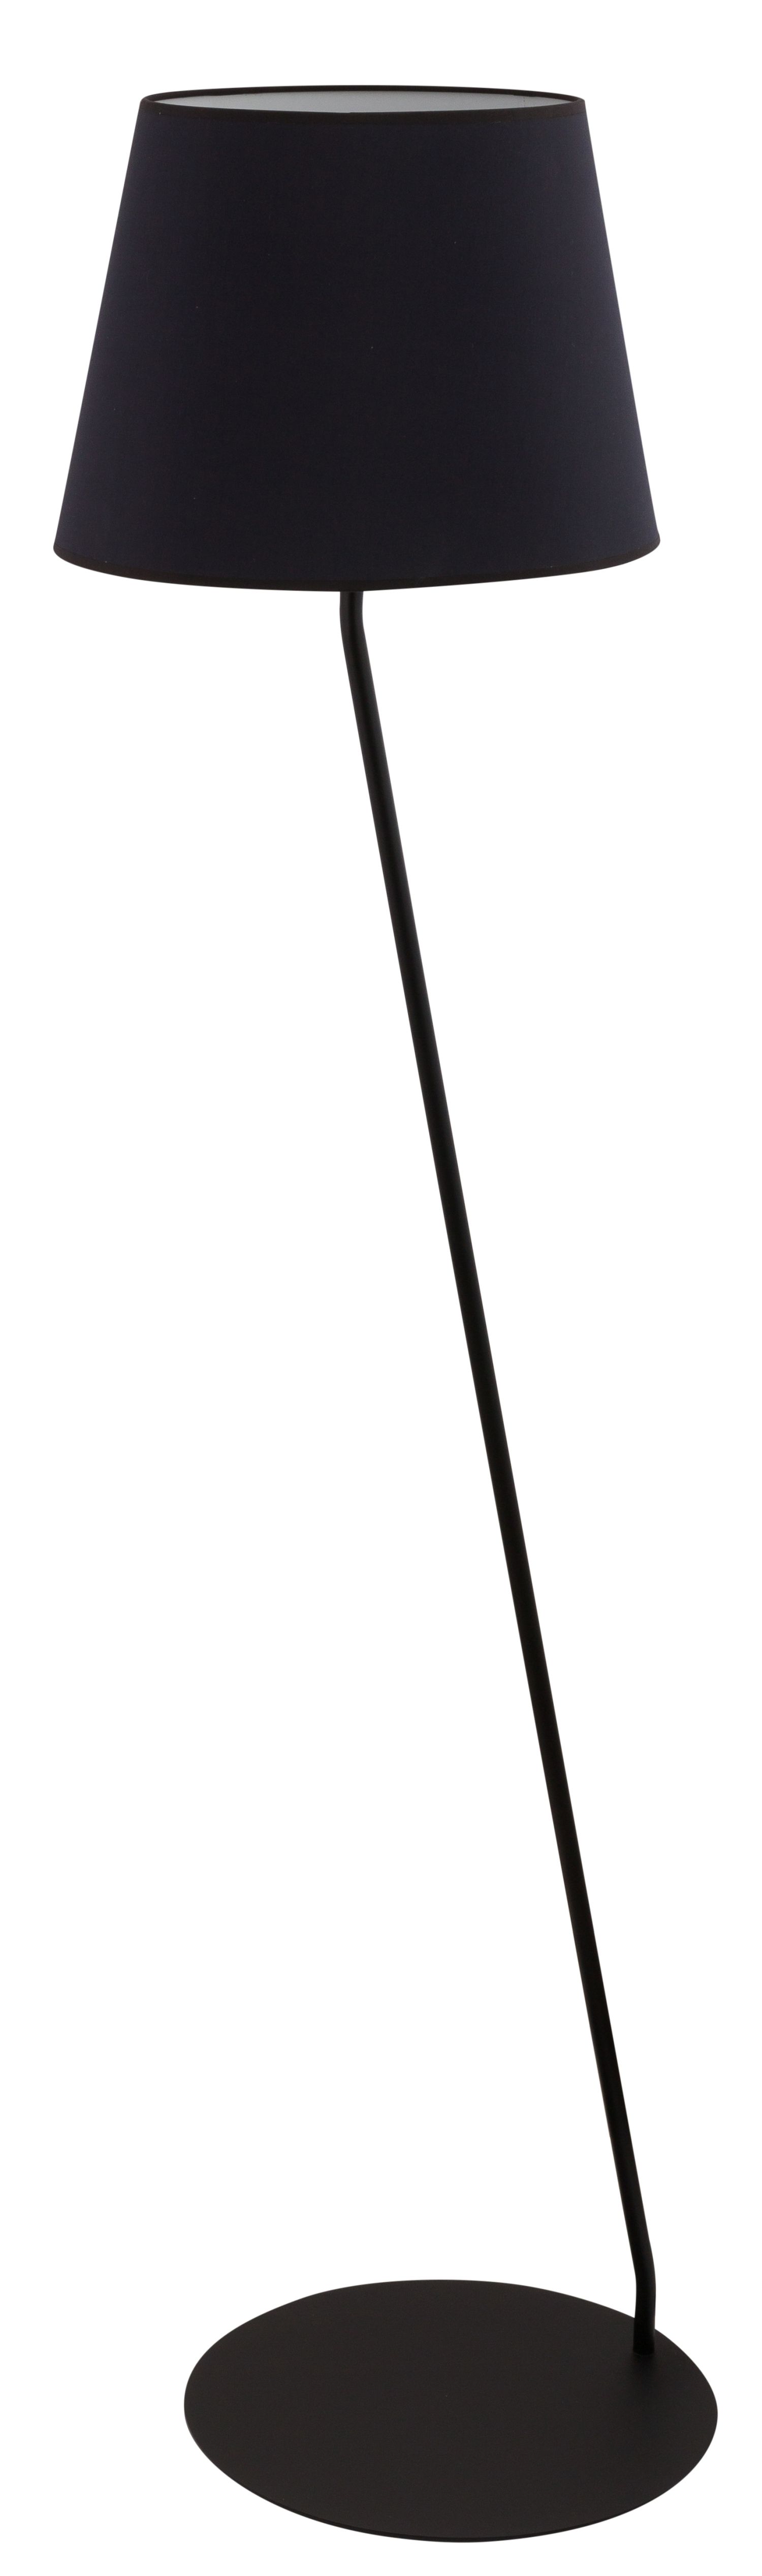 Stehlampe Schwarz Weiß blendarm E27 H:151 cm gemütlich